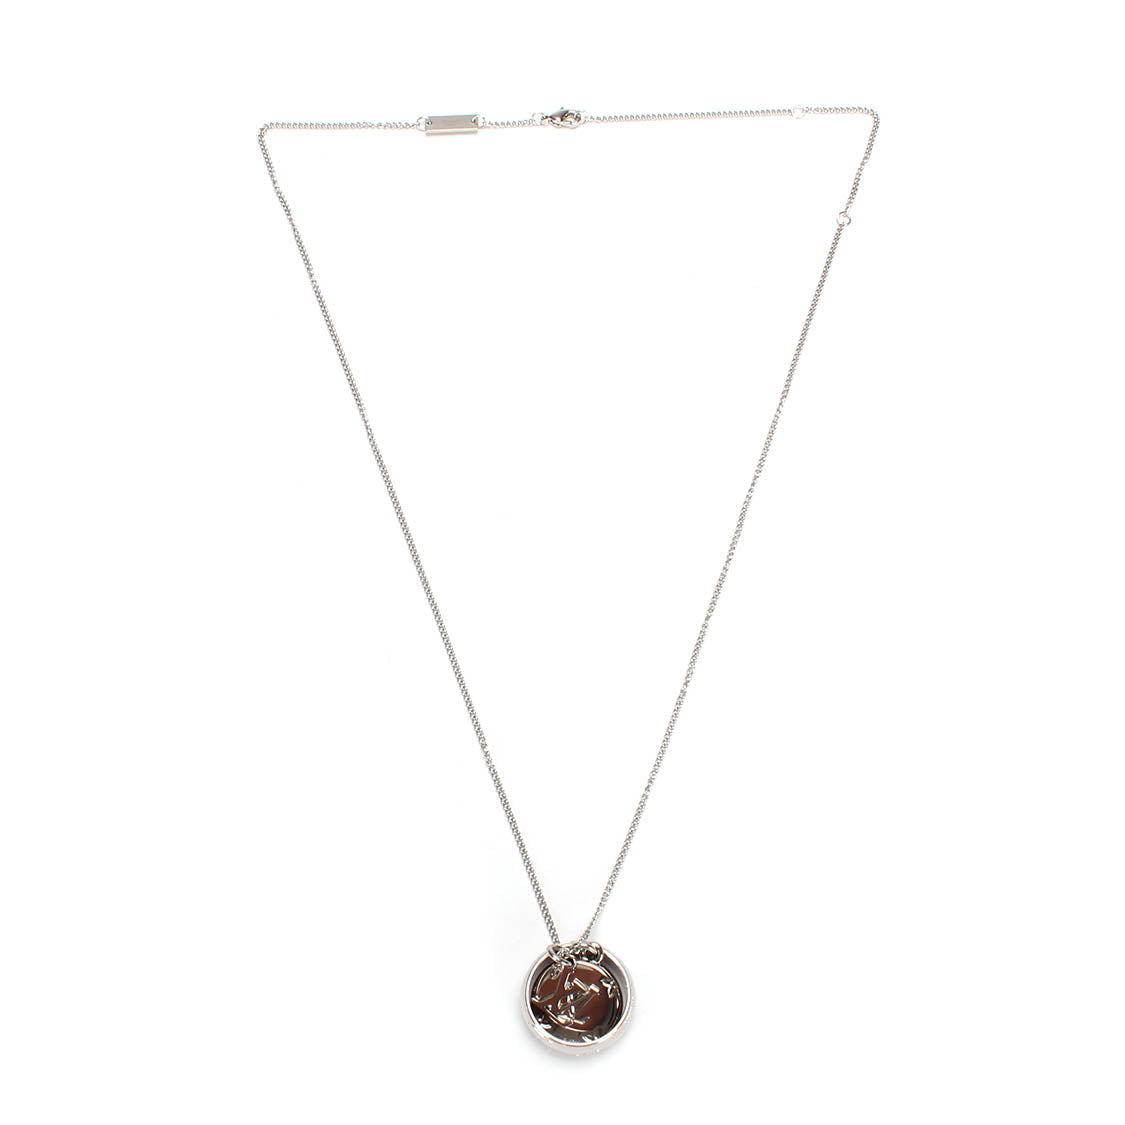 Louis Vuitton Monogram Charms Pendant Necklace M62485 Metal Necklace M62485 in Excellent condition